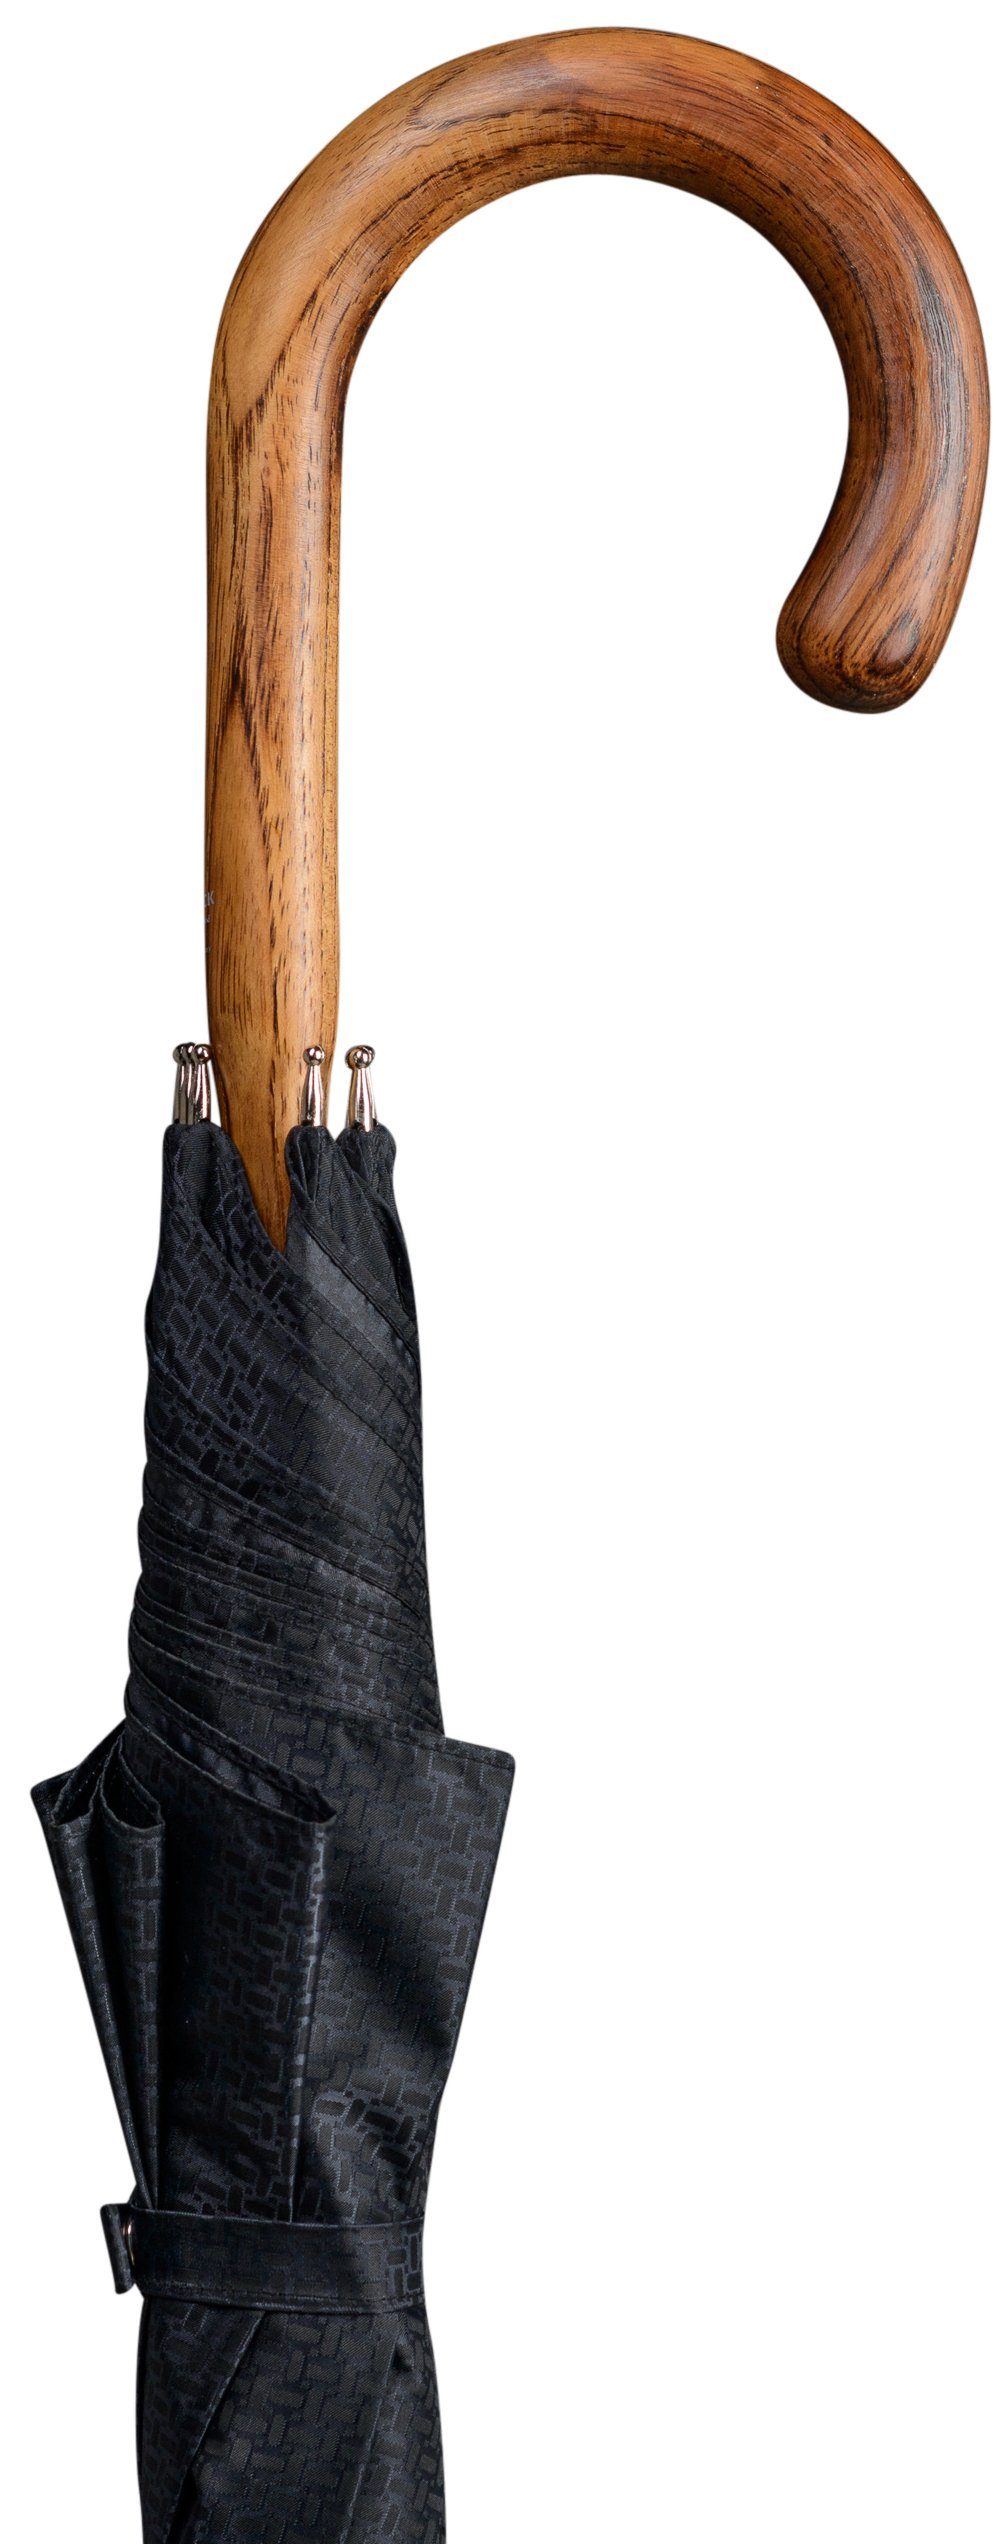 Stockshop Gehstock Luxus Schirm HICKORY, Schirmdach schwarz, Hickory-Holz,  Schirmstock durchgehend geflammt und poliert, Stabilgestell aus 8 Streben,  inkl. Gummipuffer